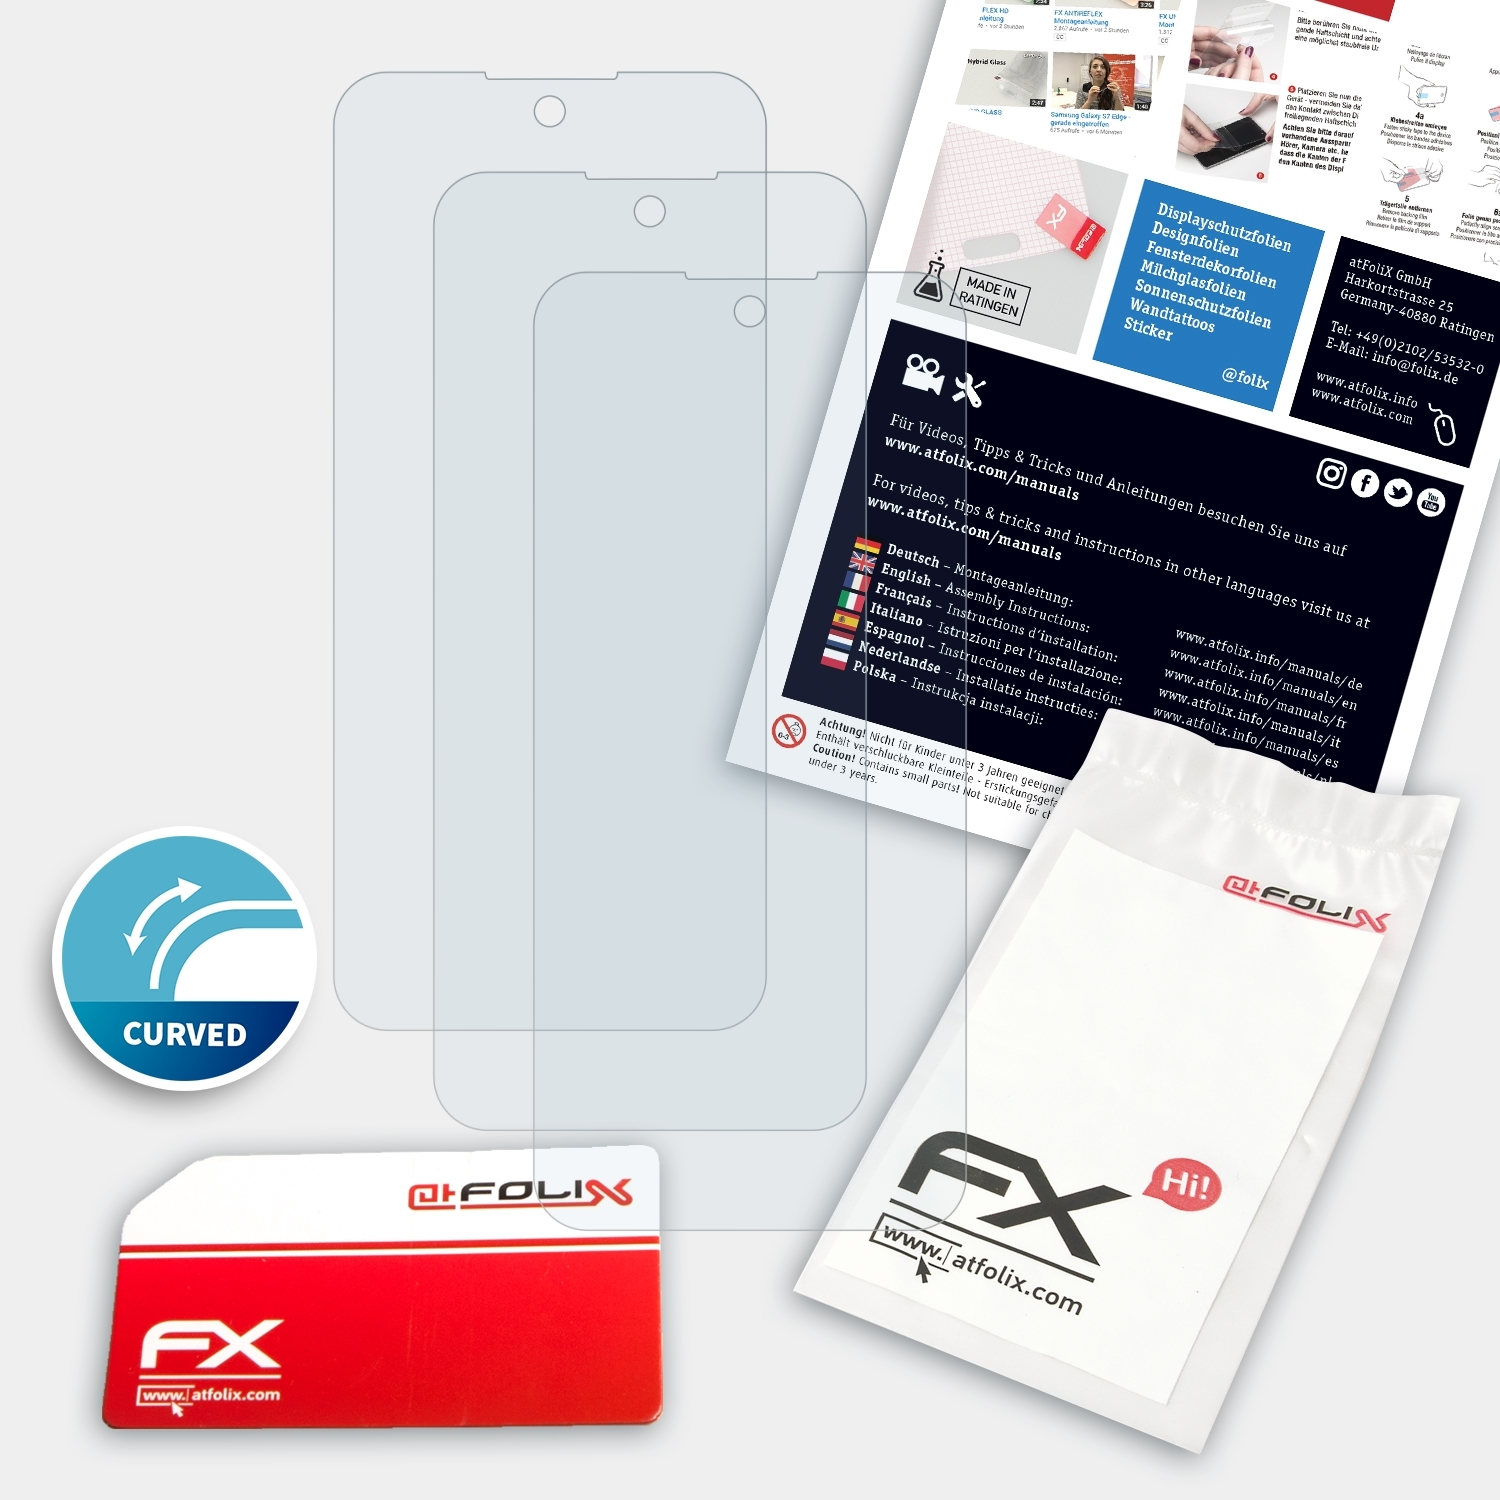 ATFOLIX 3x FX-ActiFleX Displayschutz(für K52) LG